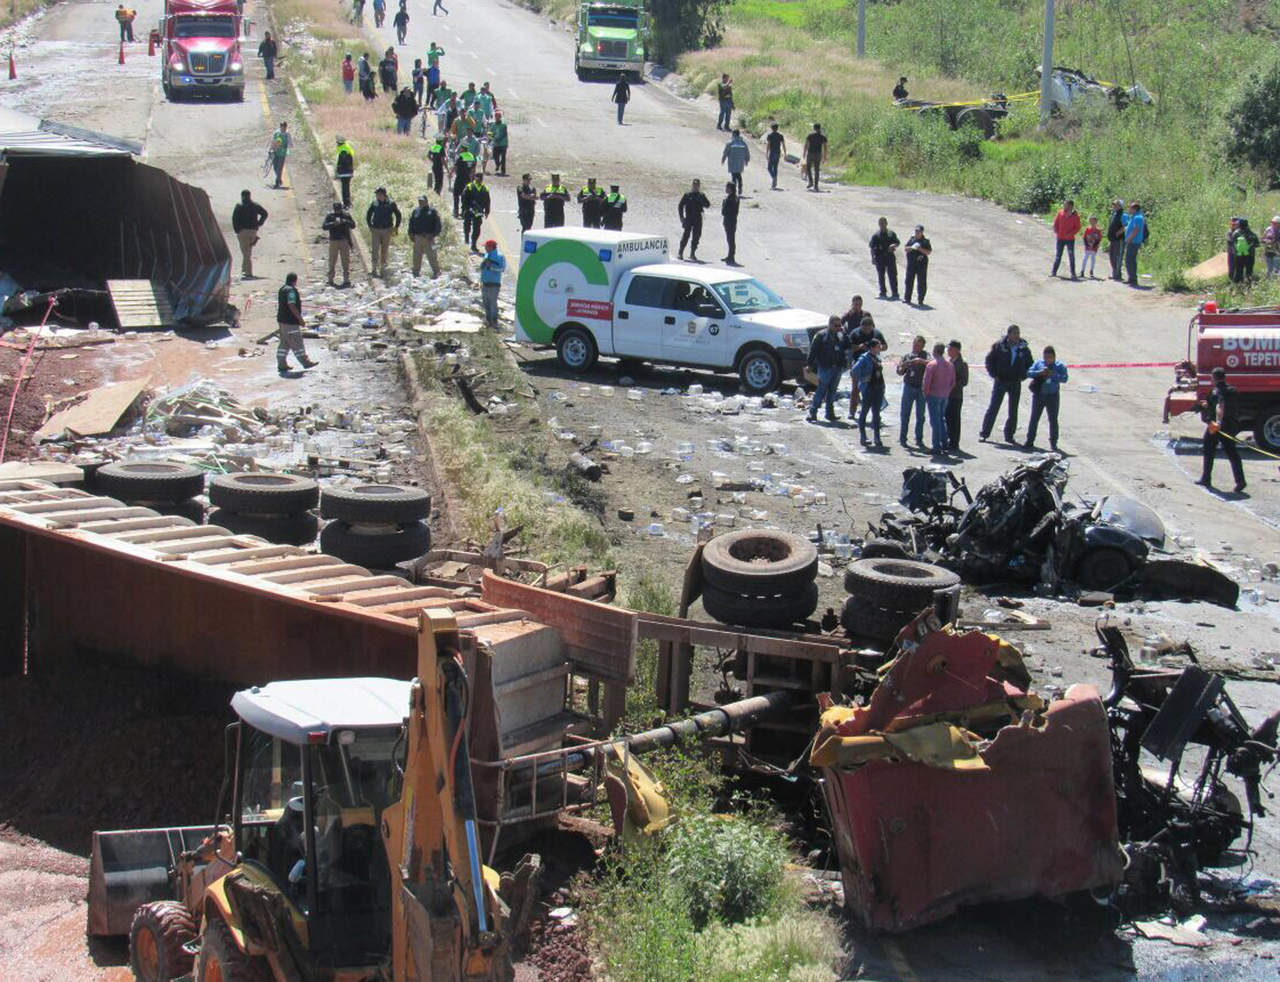 El accidente se registró alrededor de las 10:25 horas a la altura del Kilómetro 32 de la carretera federal México-Zacatepec, en la localidad de Santa Inés, en Tepetlaoxtoc. (EL UNIVERSAL)